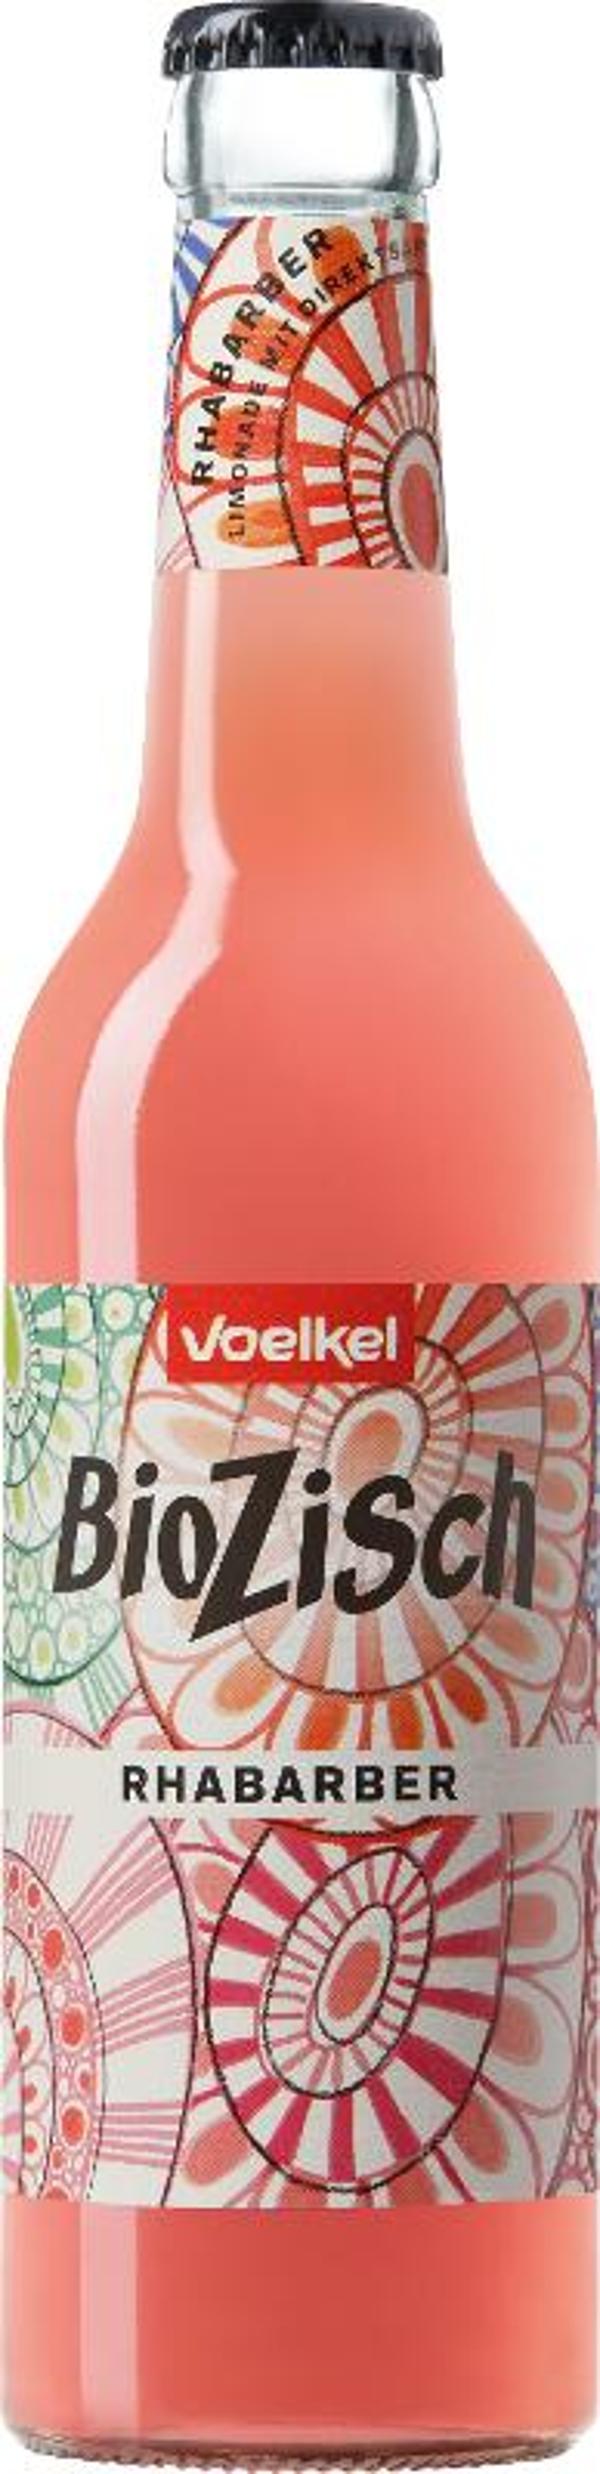 Produktfoto zu BioZisch Rhabarber 0,33l Flasc